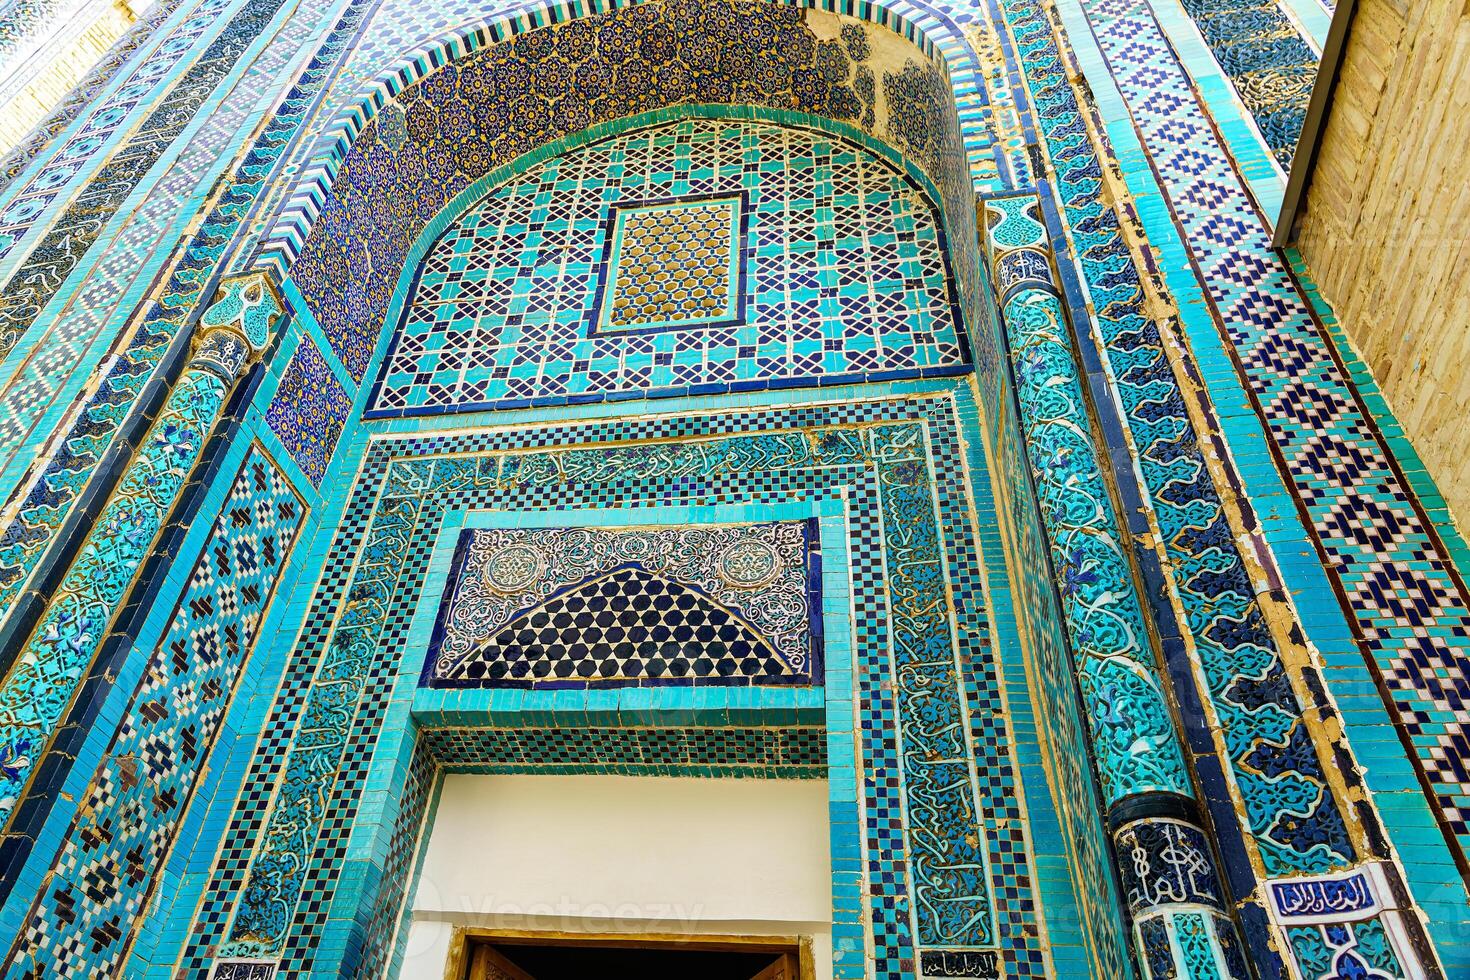 de oude mausoleum van Shakh-i-zinda, de graf van leven koning, gedurende de regeren van amir temur in samarkand. necropolis boog versierd met meetkundig Islamitisch oosters ornament. foto